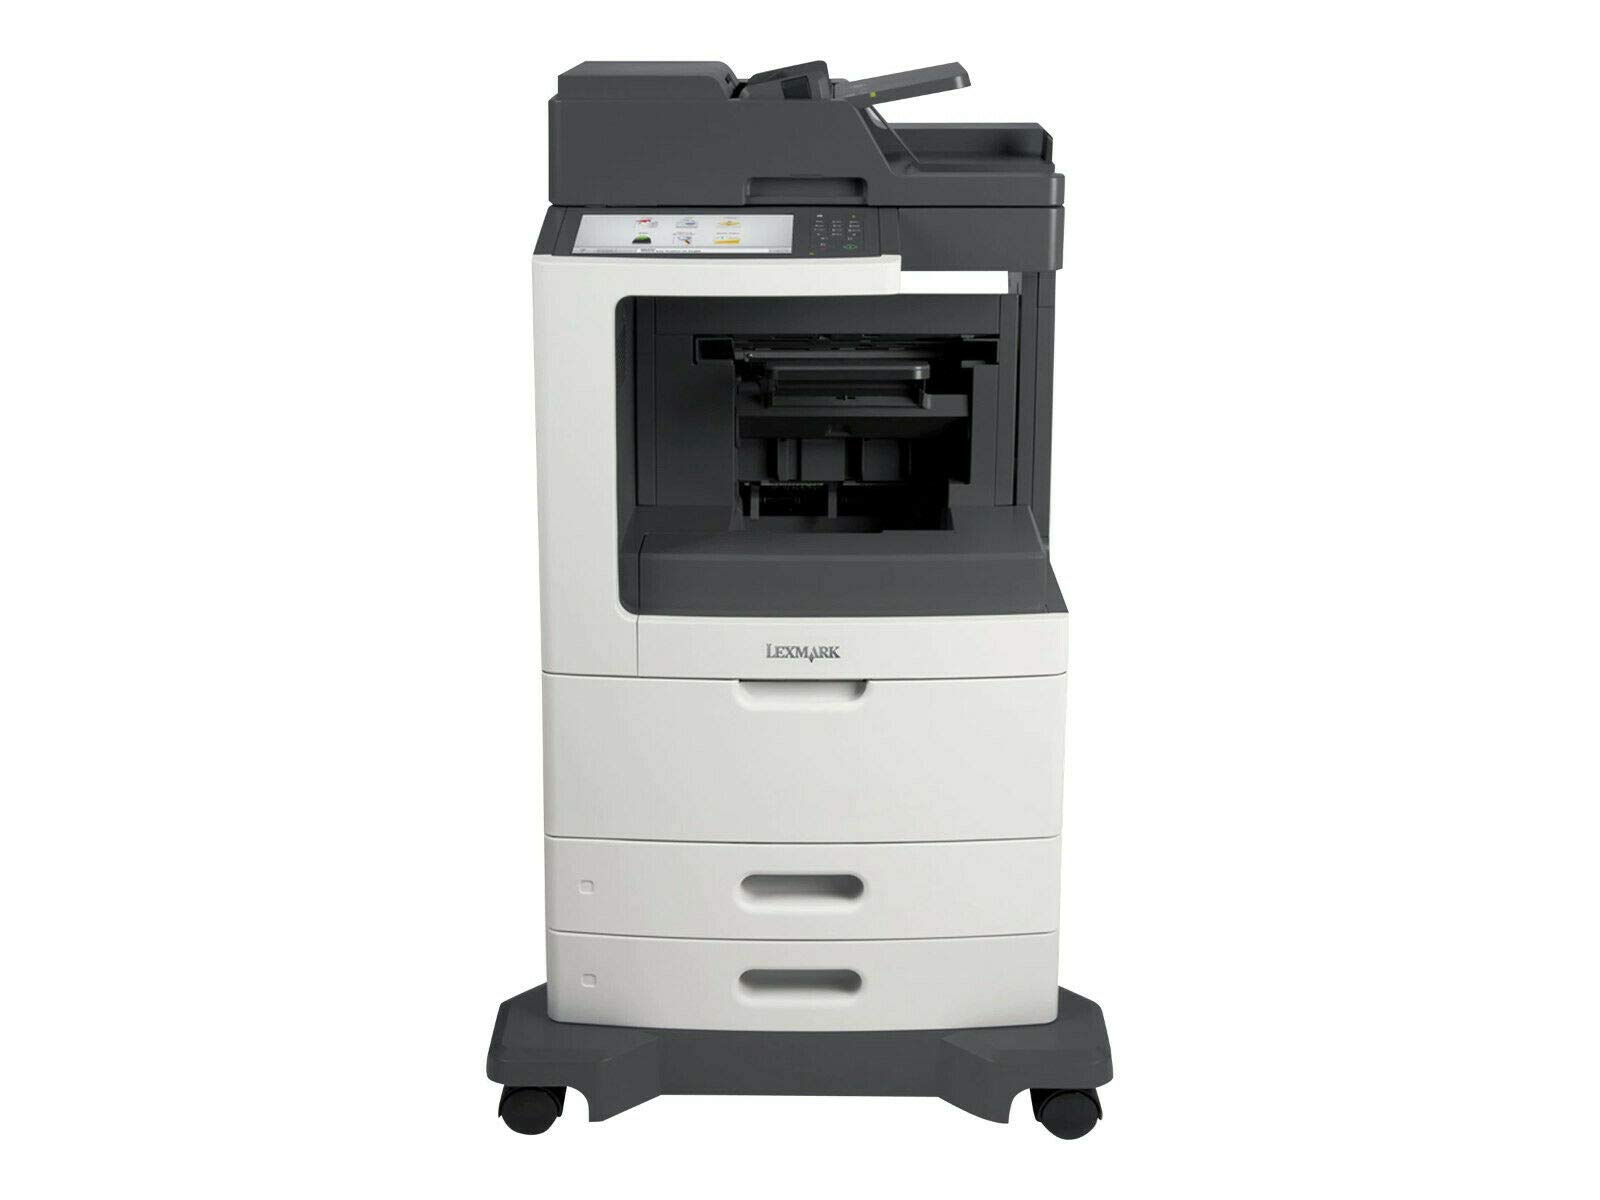 W810n - Optra B/W Laser Printer